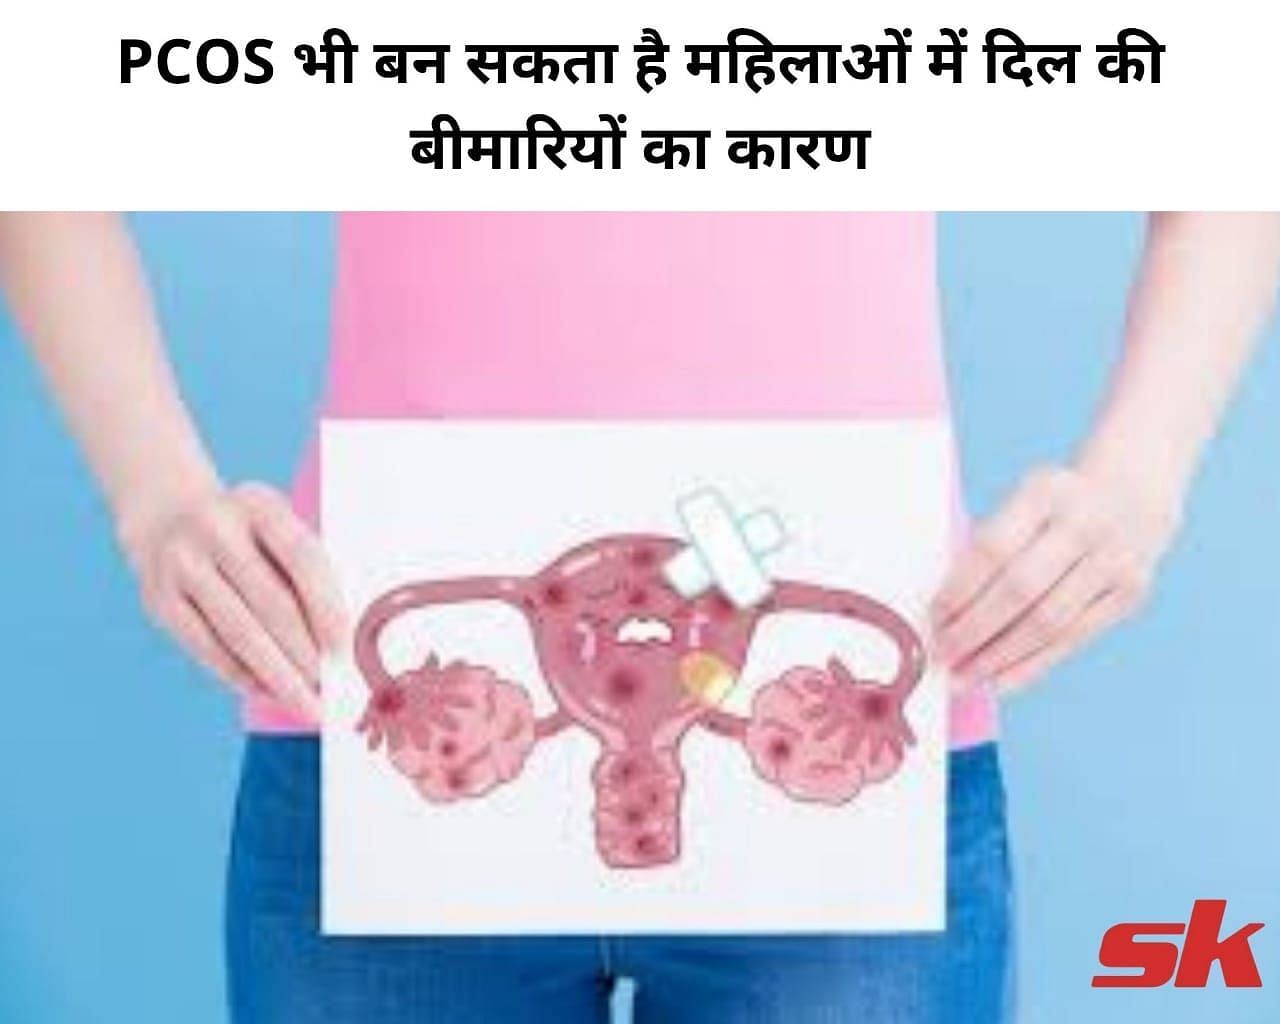 PCOS भी बन सकता है महिलाओं में दिल की बीमारियों का कारण (फोटो - sportskeeda hindi)